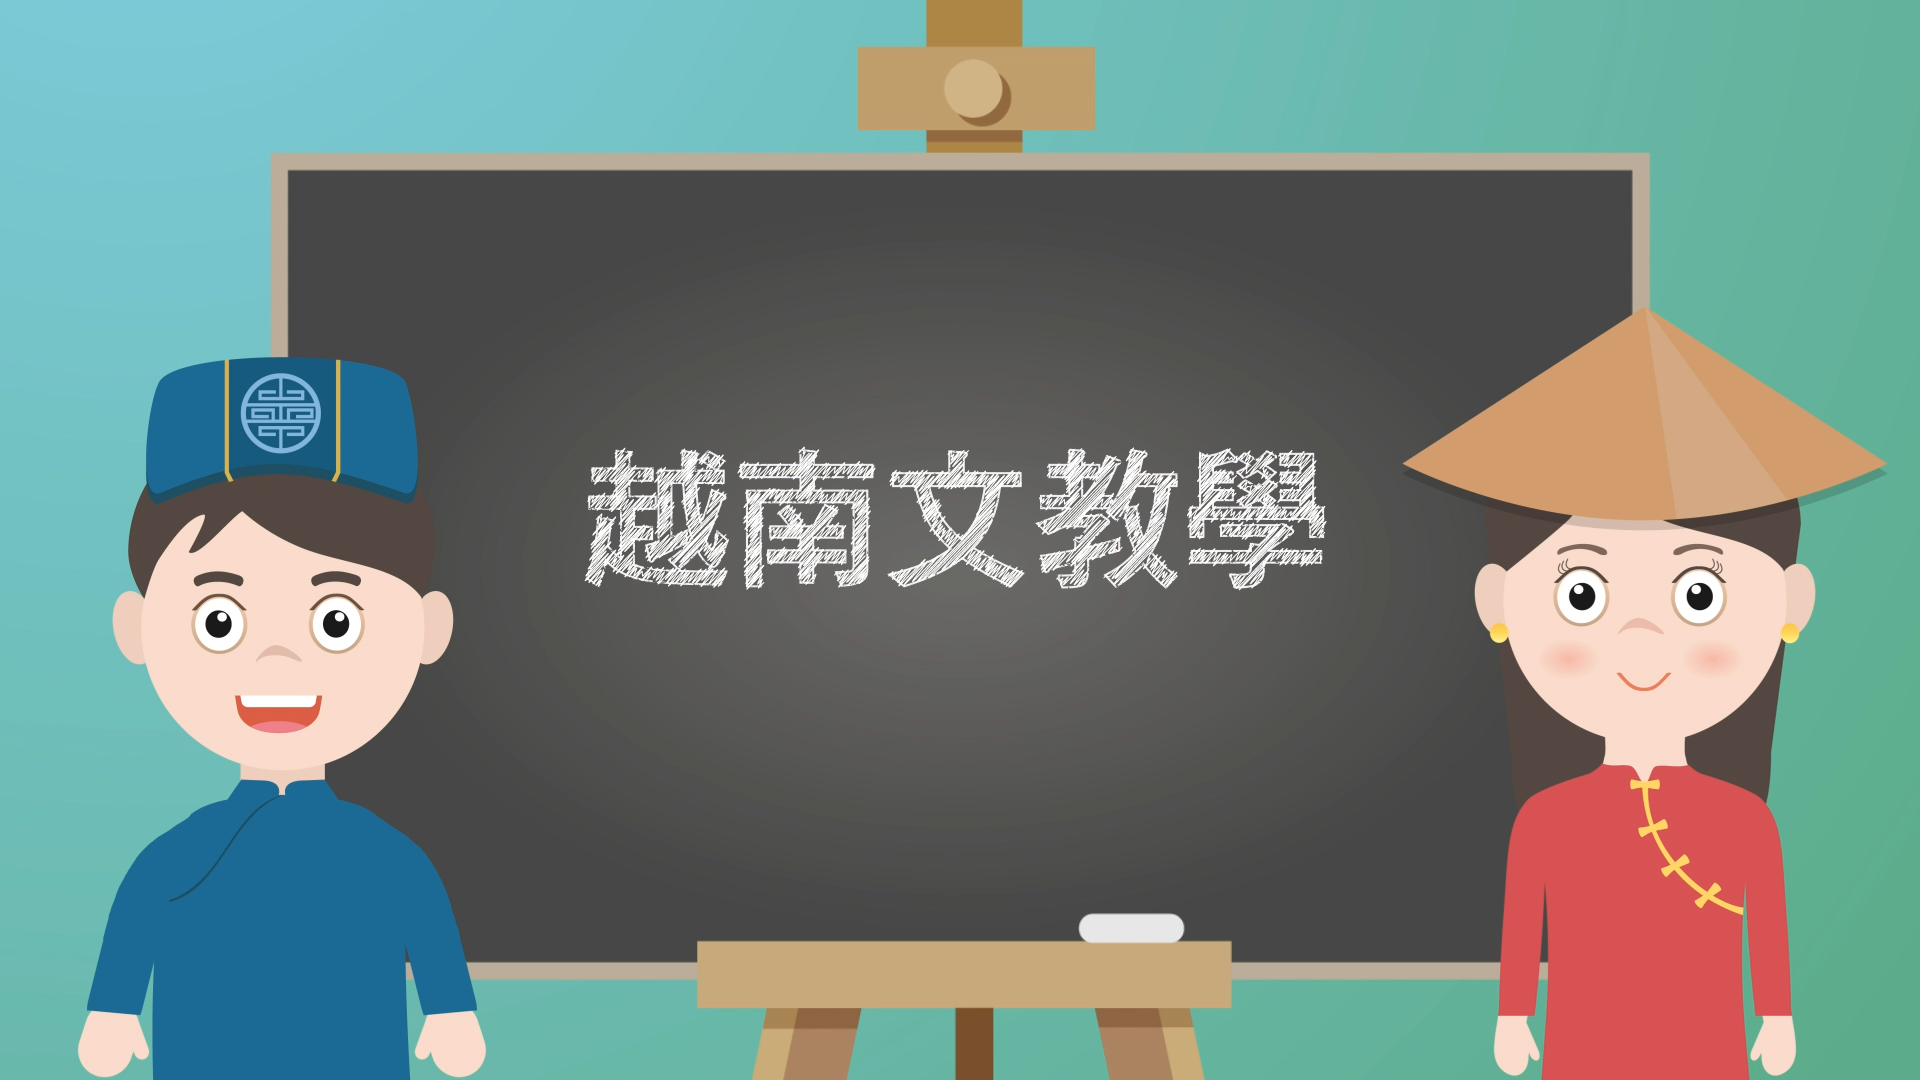 14/11 – NIA Video học ngôn ngữ: Kỹ thuật hồi phục sức khỏe truyền thống của Đài Loan – Mát-xa